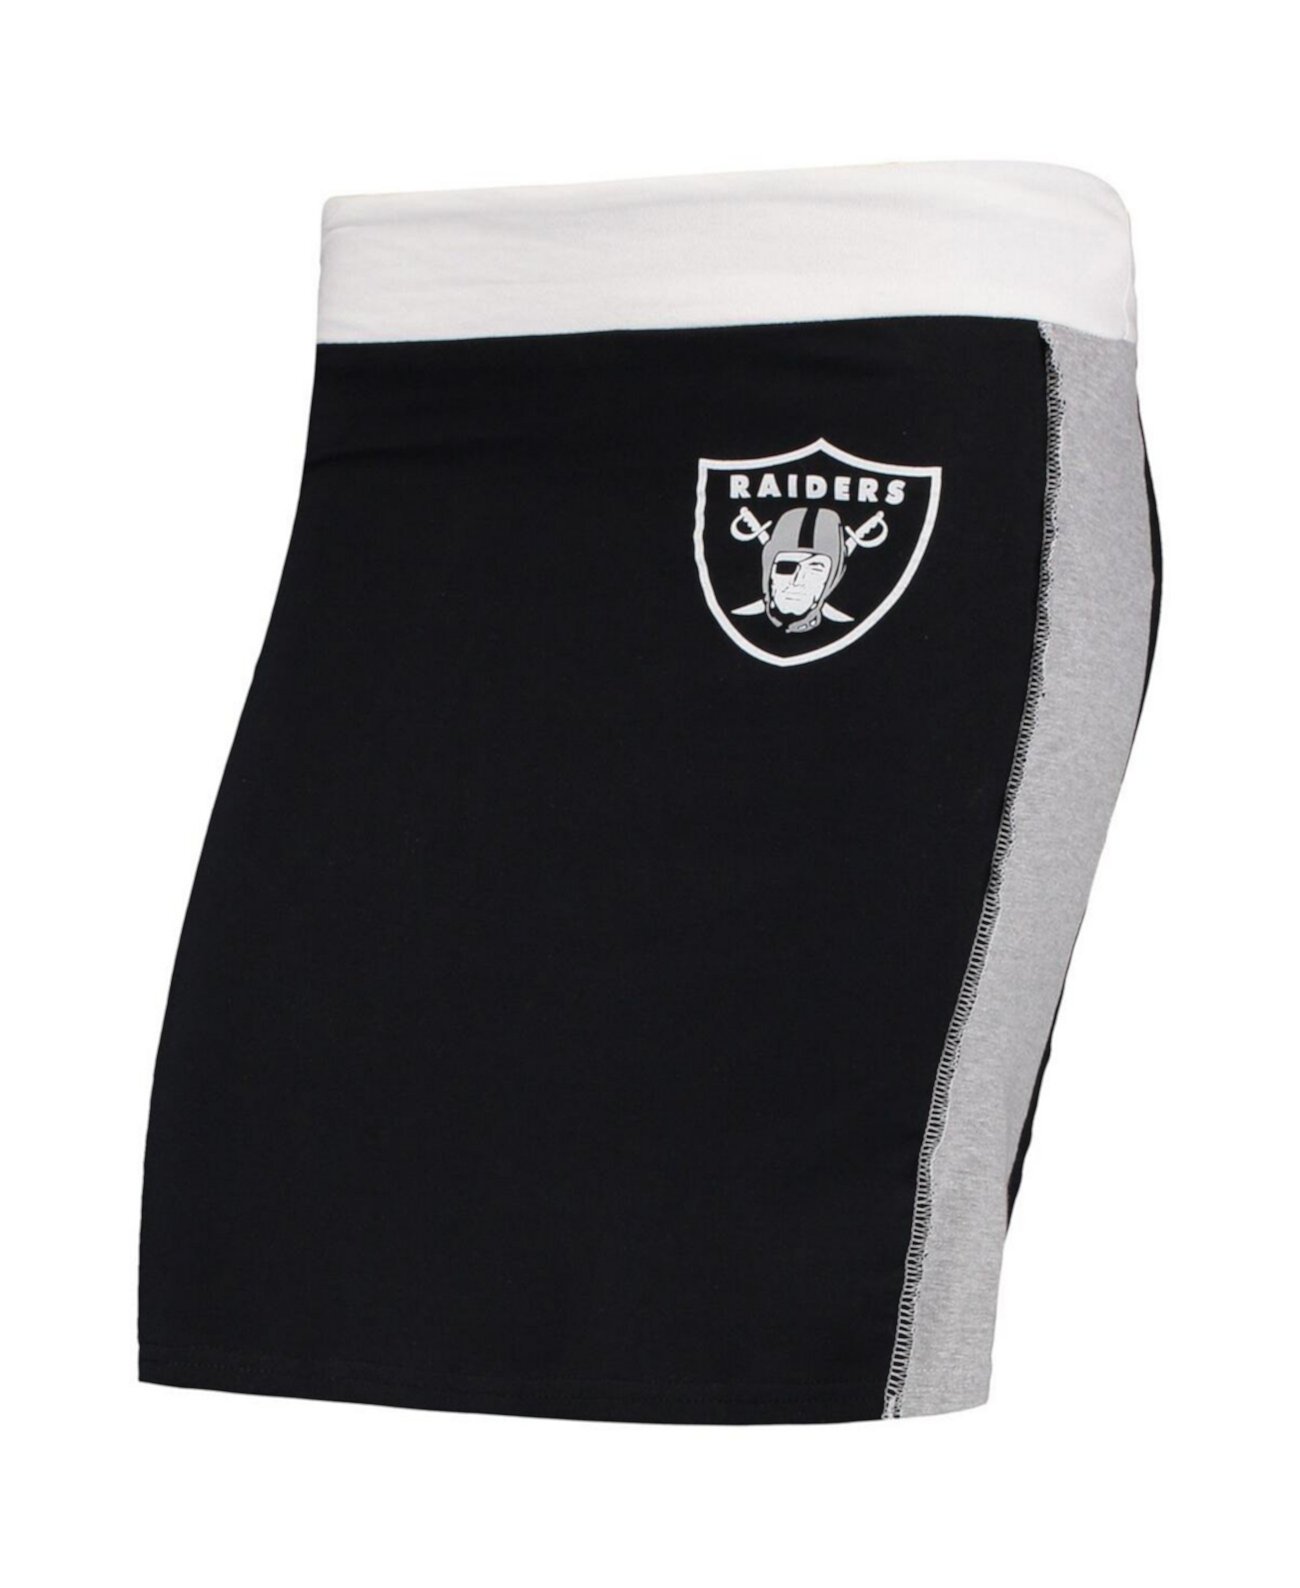 Женская черная короткая юбка Las Vegas Raiders Refried Apparel